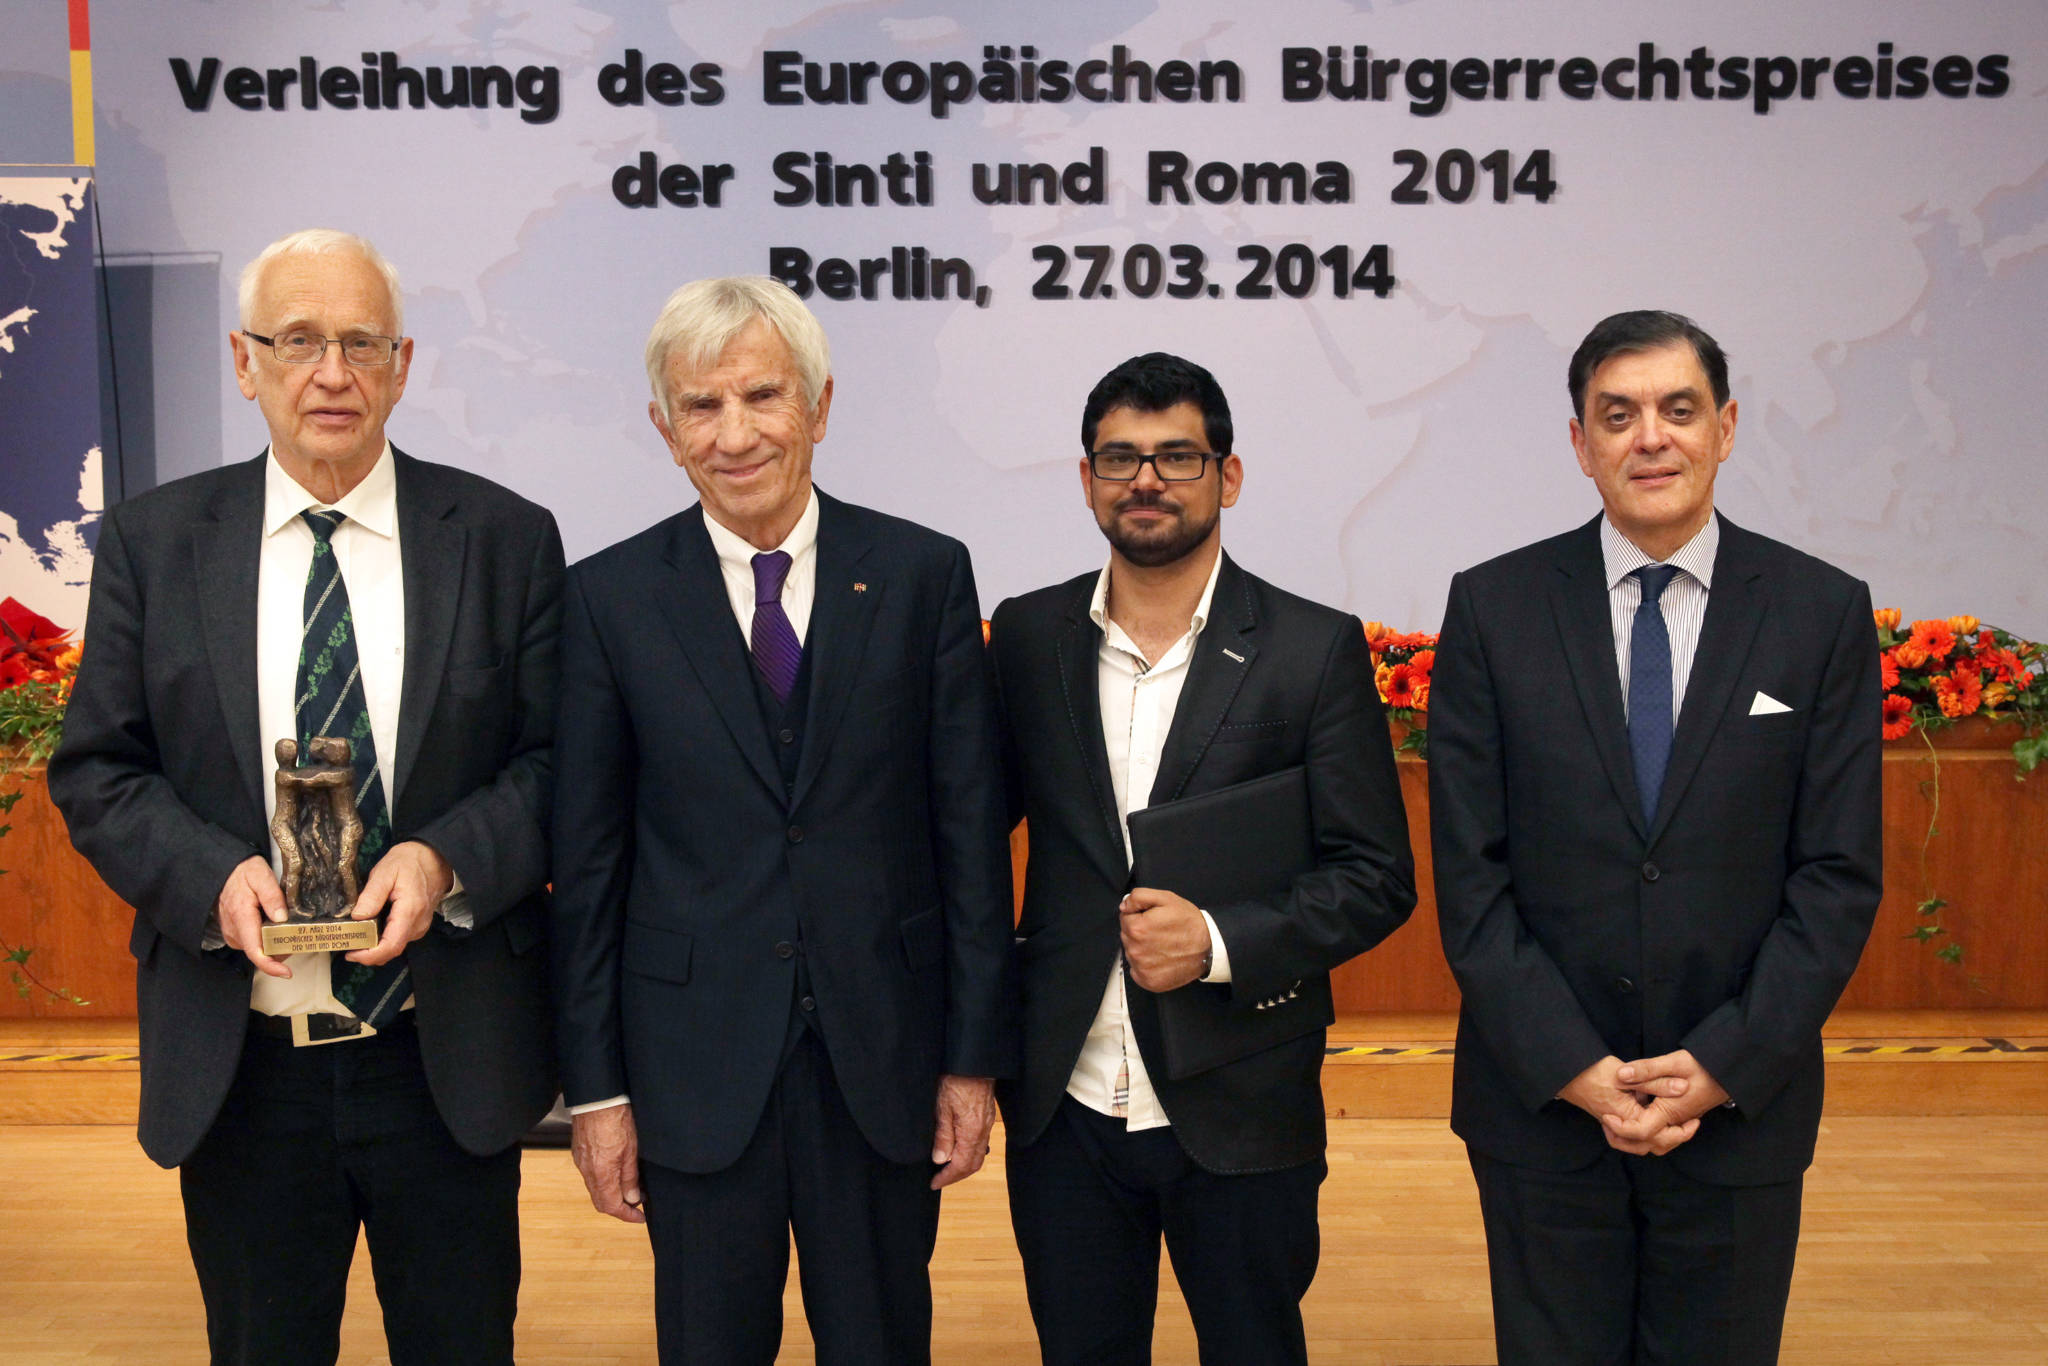 Das Foto zeigt die Verleihung des Europäischen Bürgerrechtspreises der Sinti und Roma an Tilman Zülch am 27.03.2014. Im Bild stehen von links Tilman Zülch, Manfred Lautenschläger, Emran Elmazi, Romani Rose.